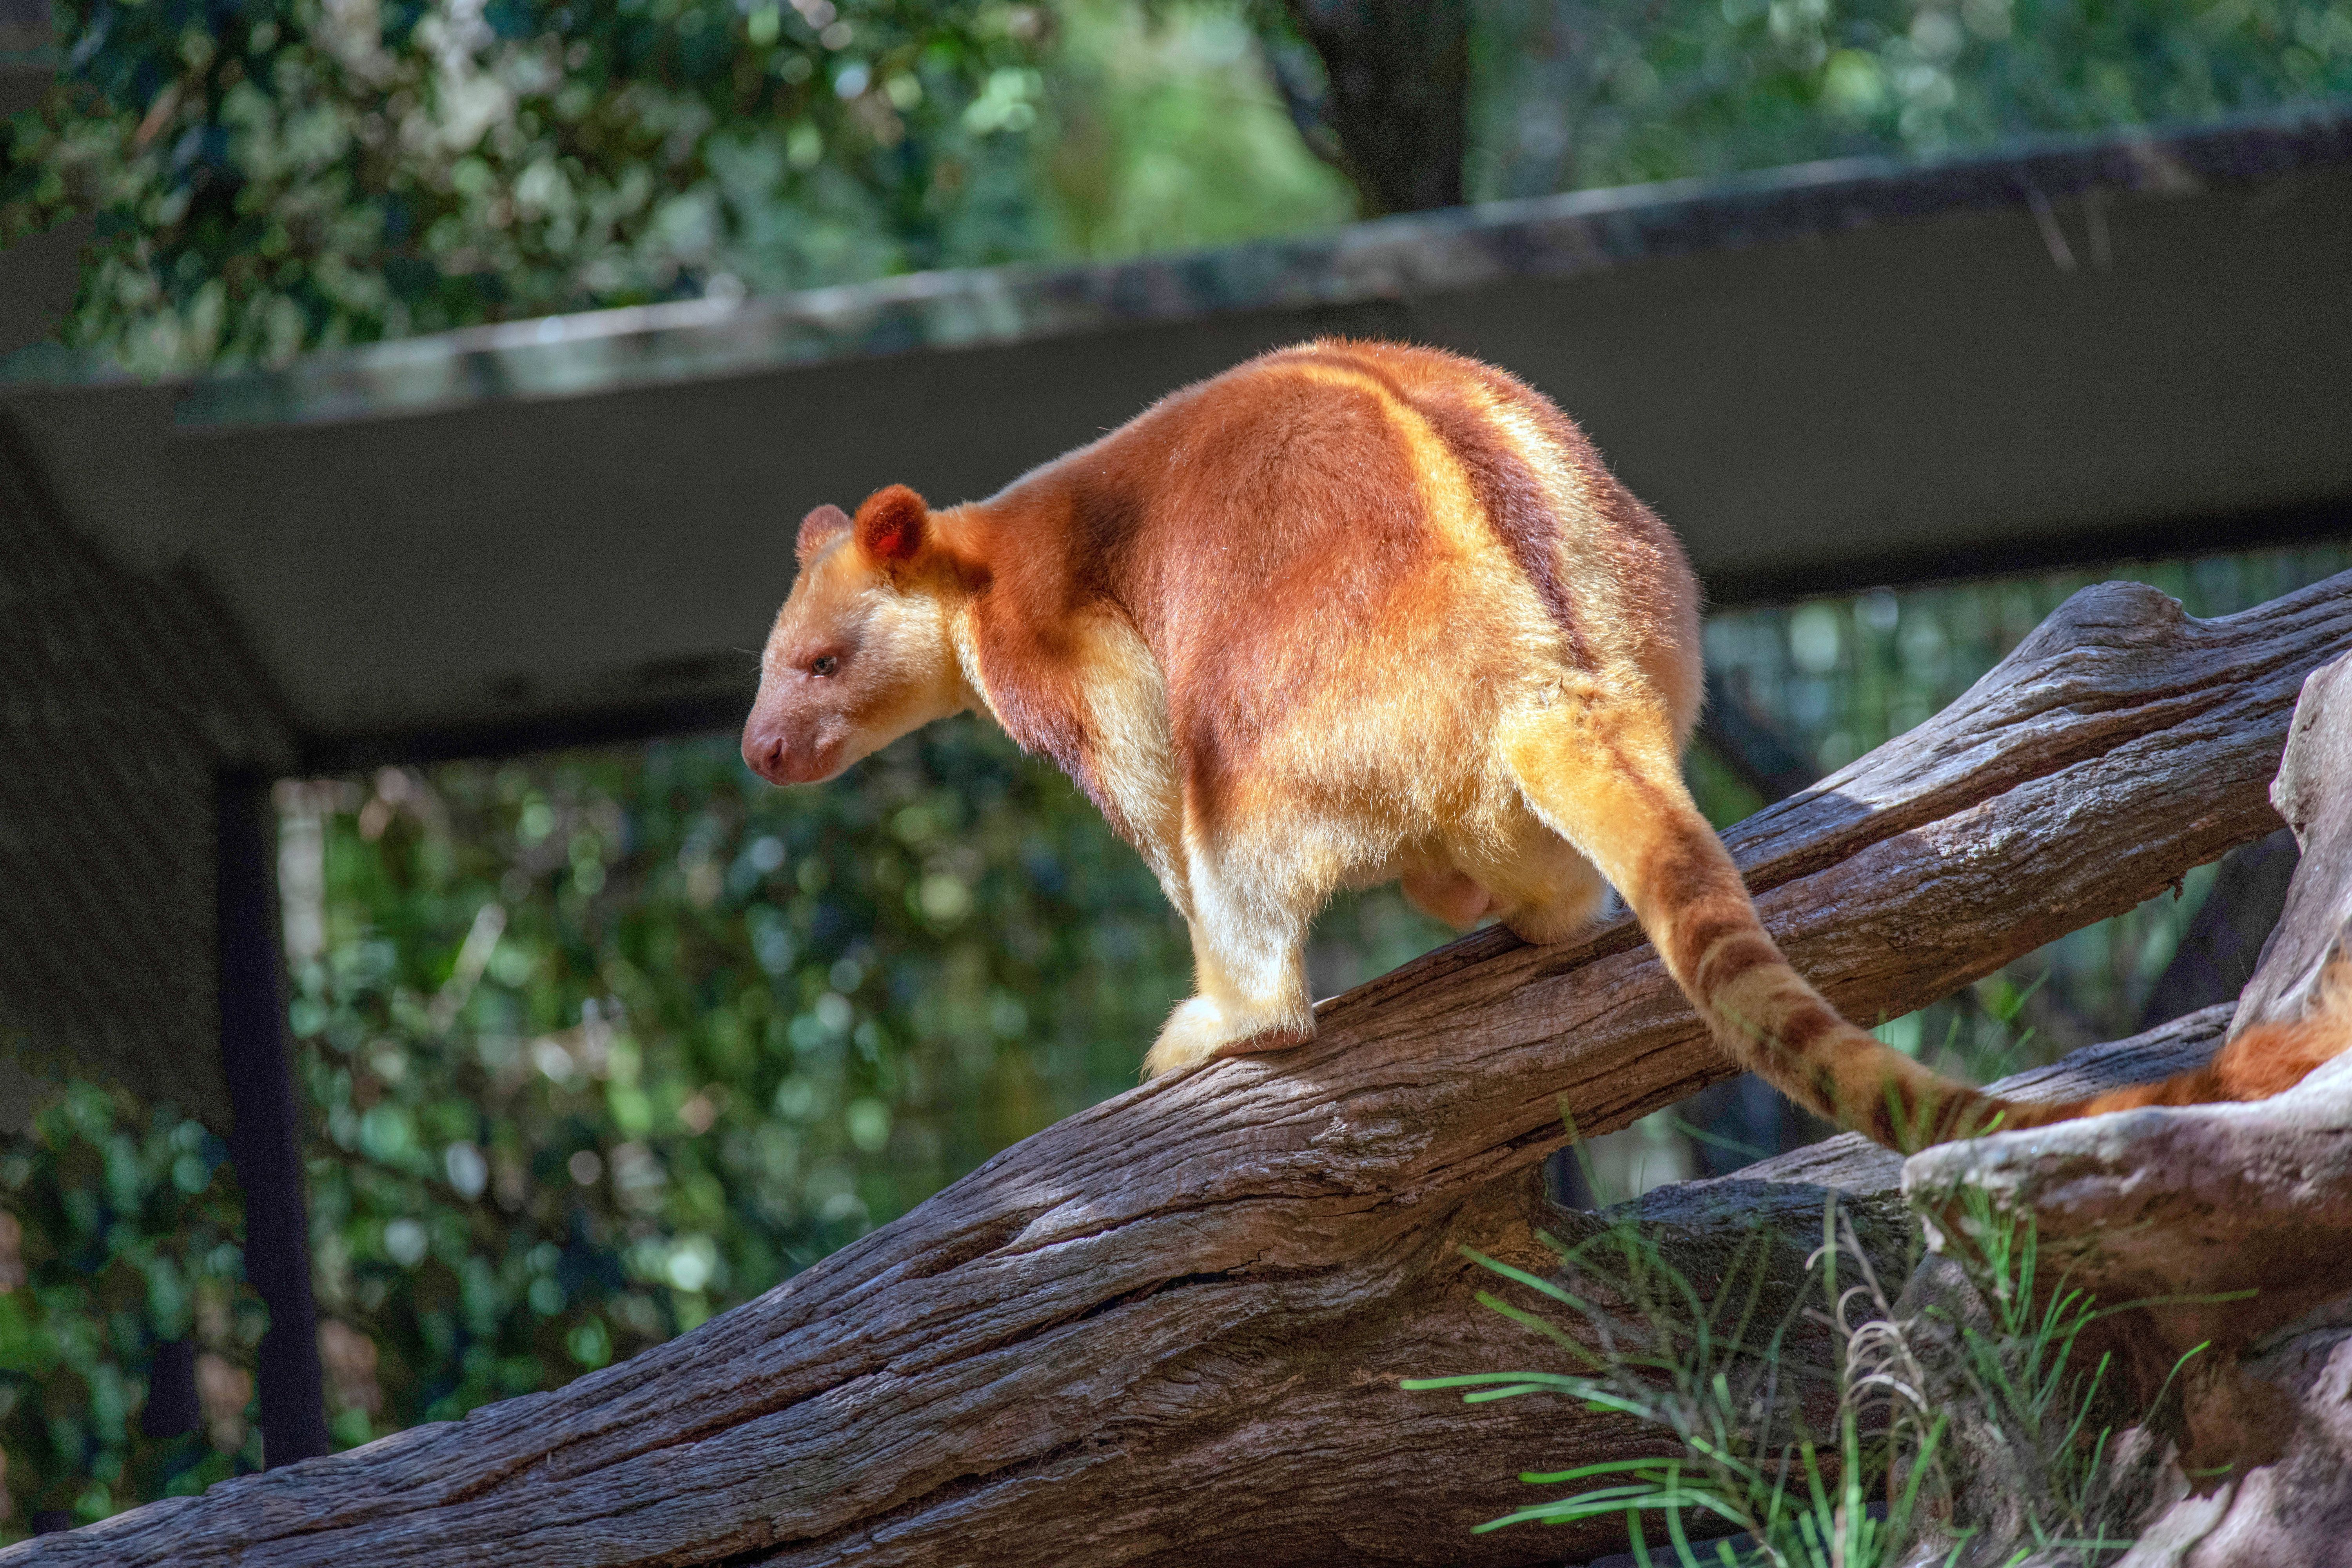 Baumkängurus ähneln anderen Kängurus wenig: Ihre Vorder- und Hinterbeine sind fast gleich lang. Diese Tiere können außerdem nicht hüpfen, sie bewegen sich laufend und kletternd fort - schließlich leben sie auf Bäumen.